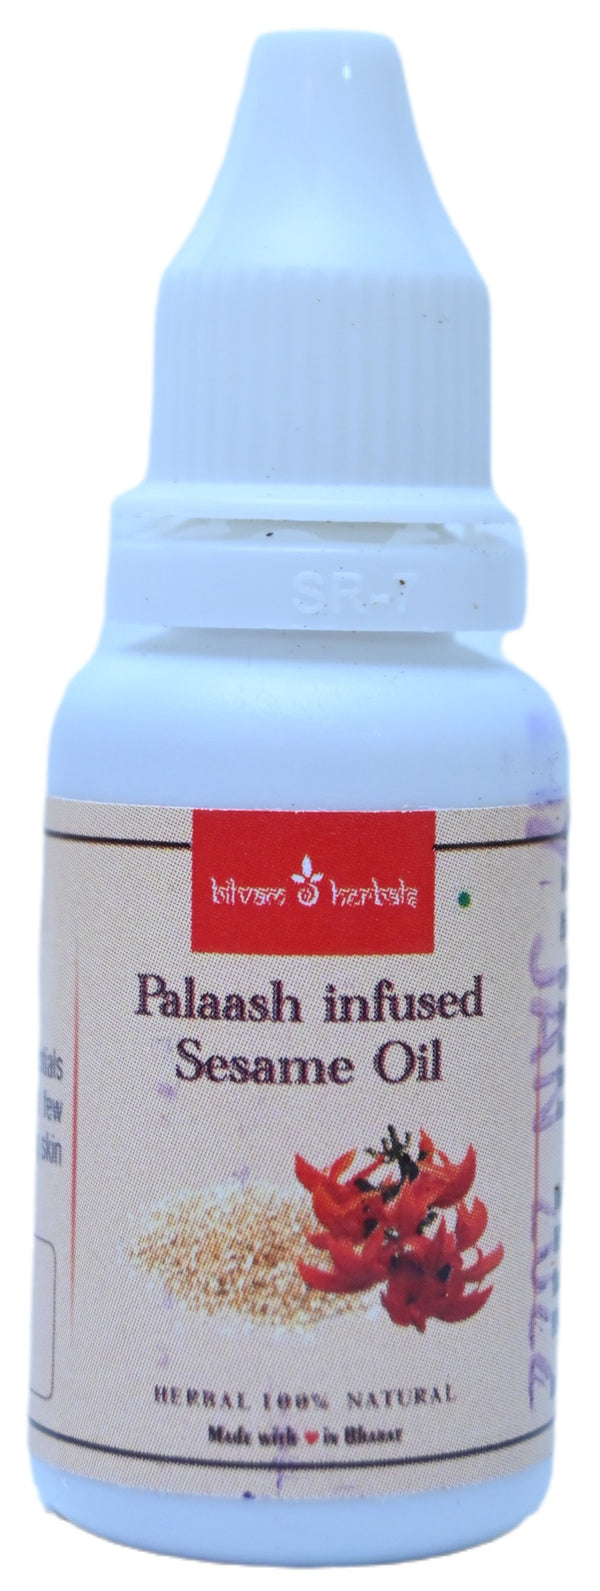 Palaash Flowers infused Sesame Oil - Skin Care